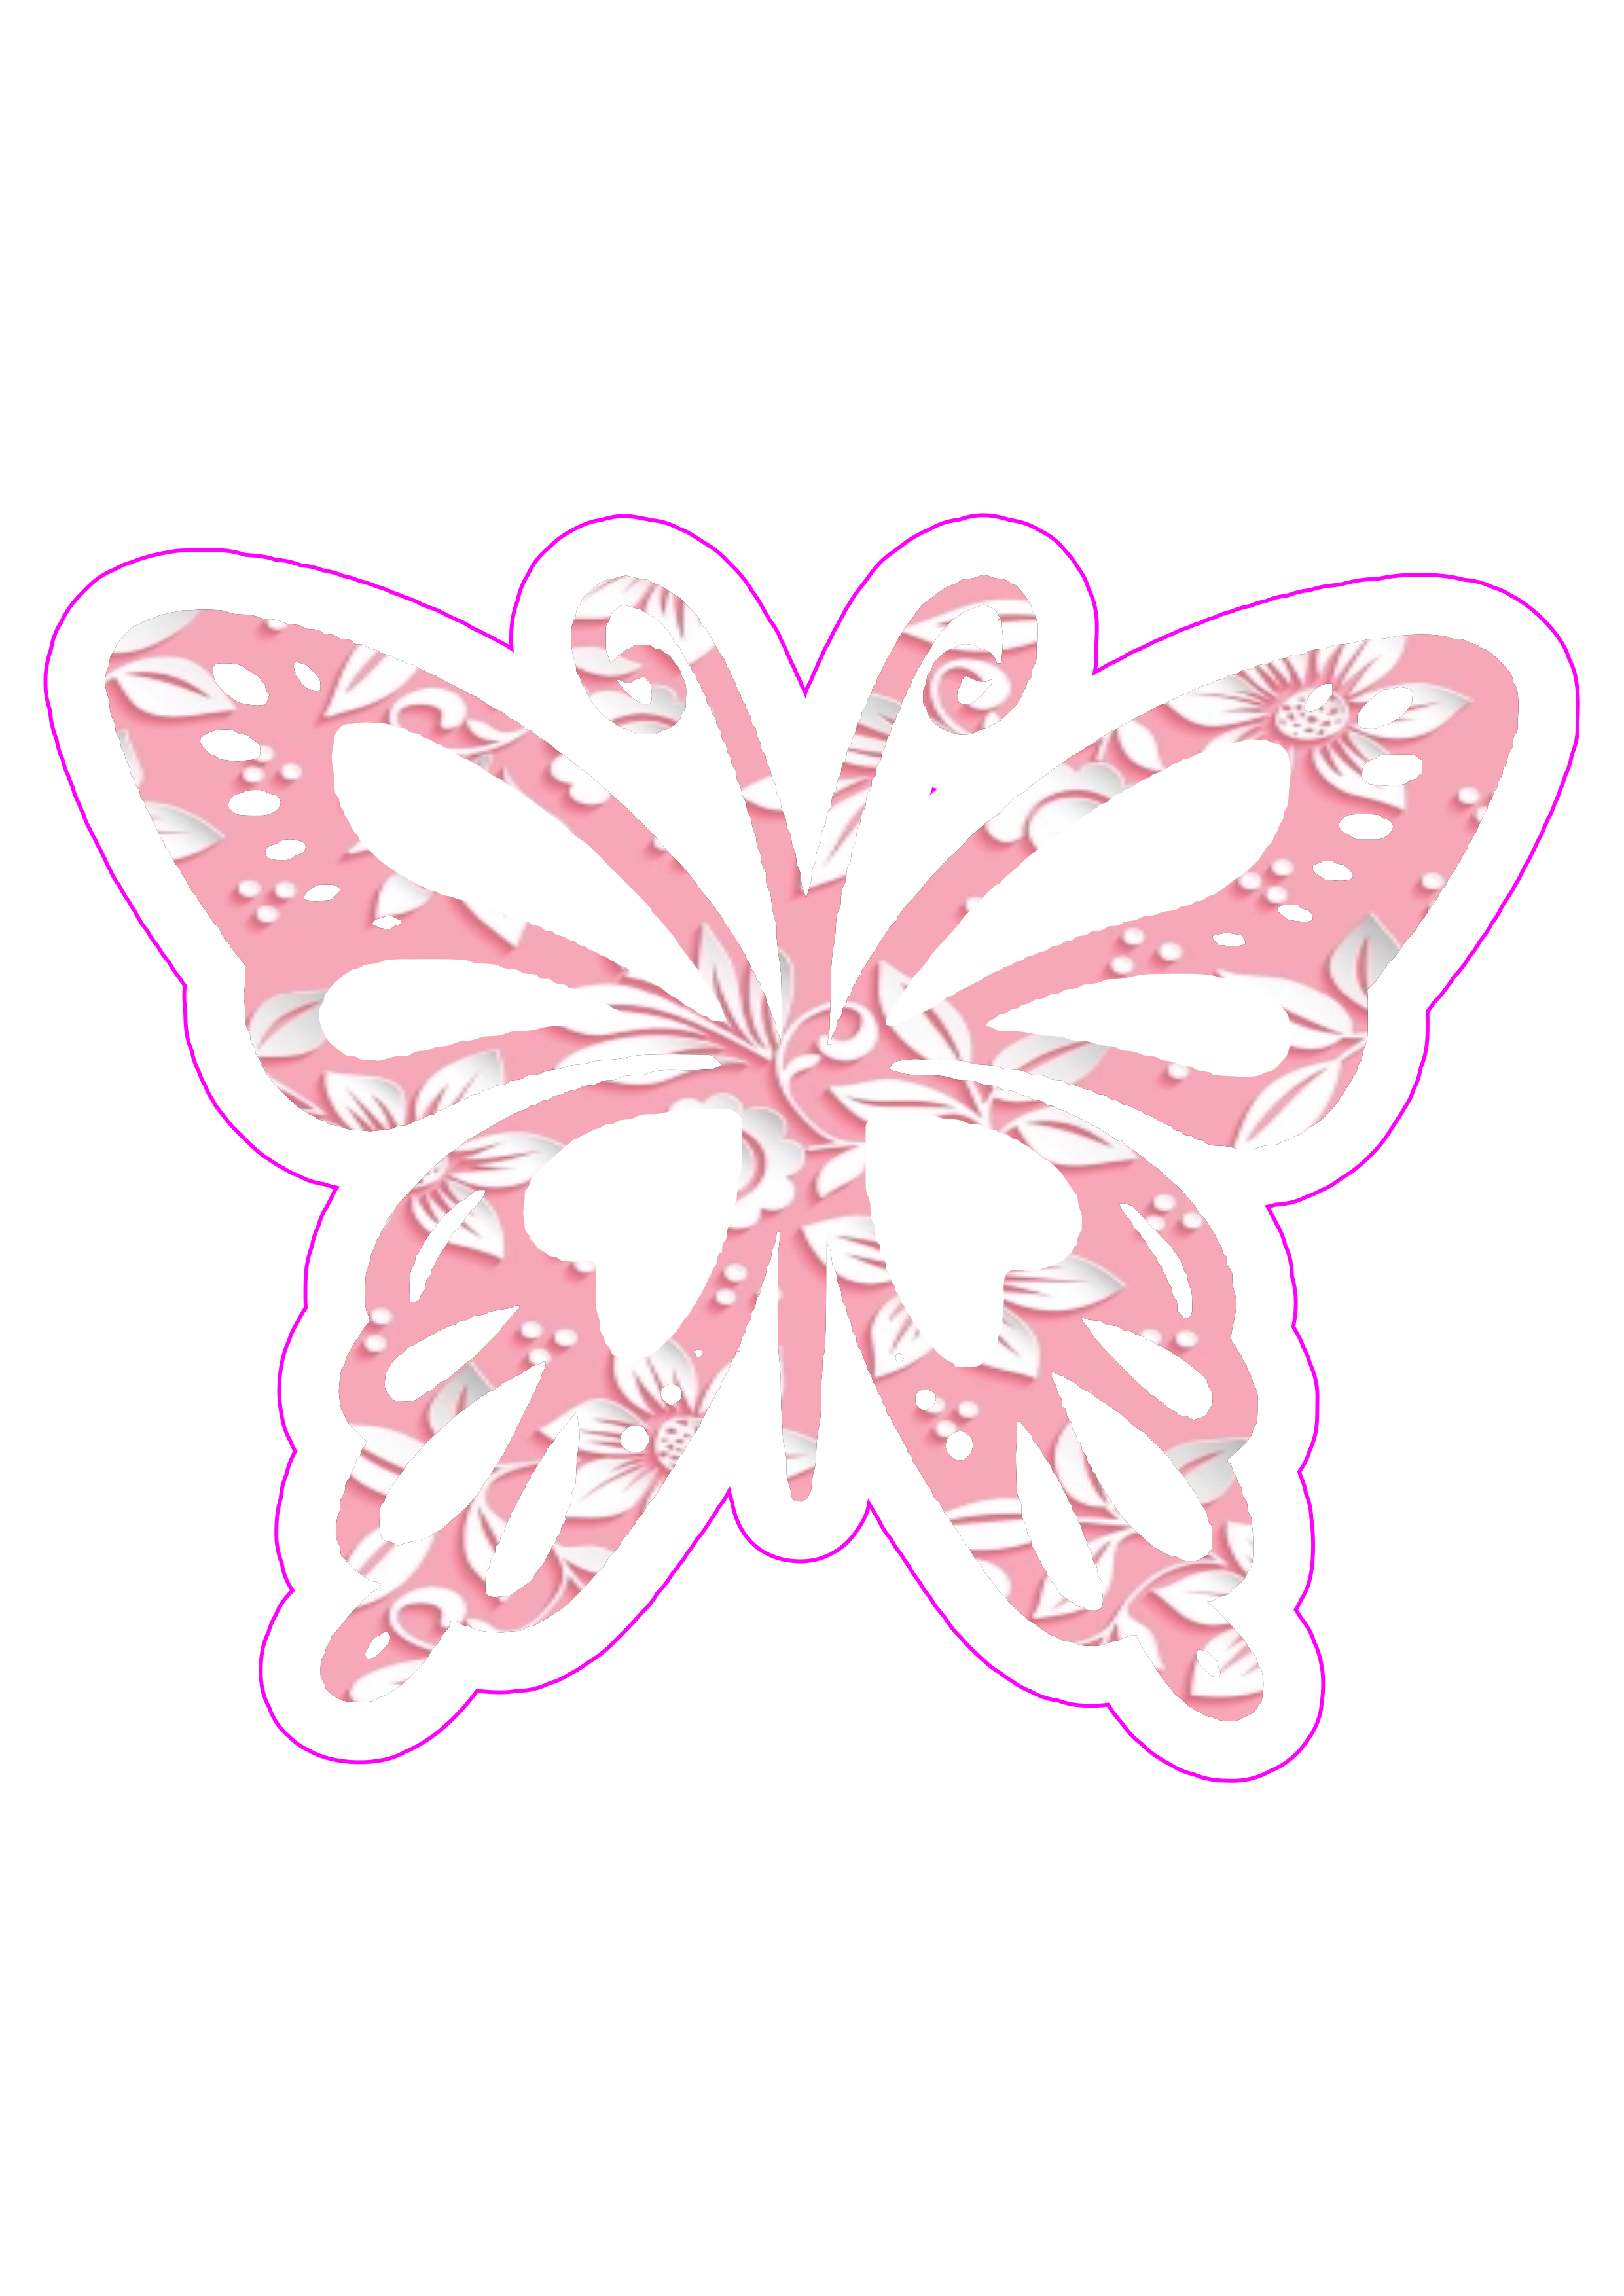 borboletas-flowers-1